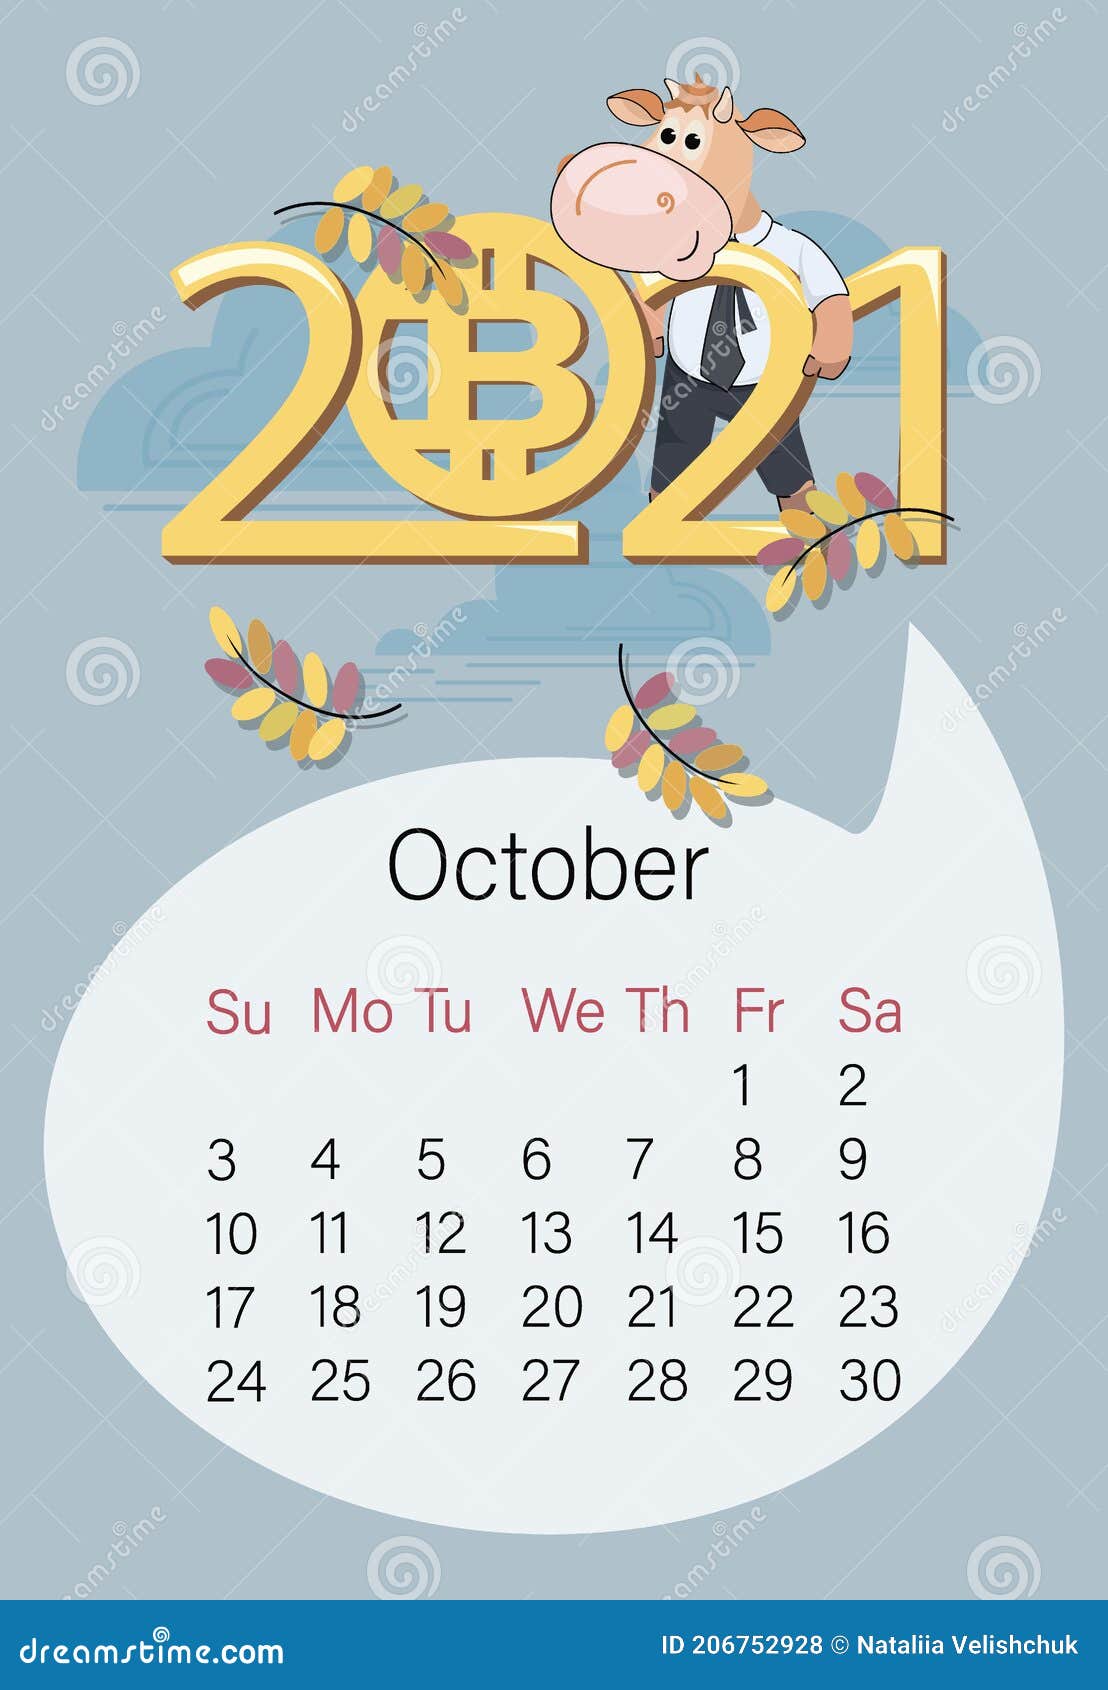 calendario btc